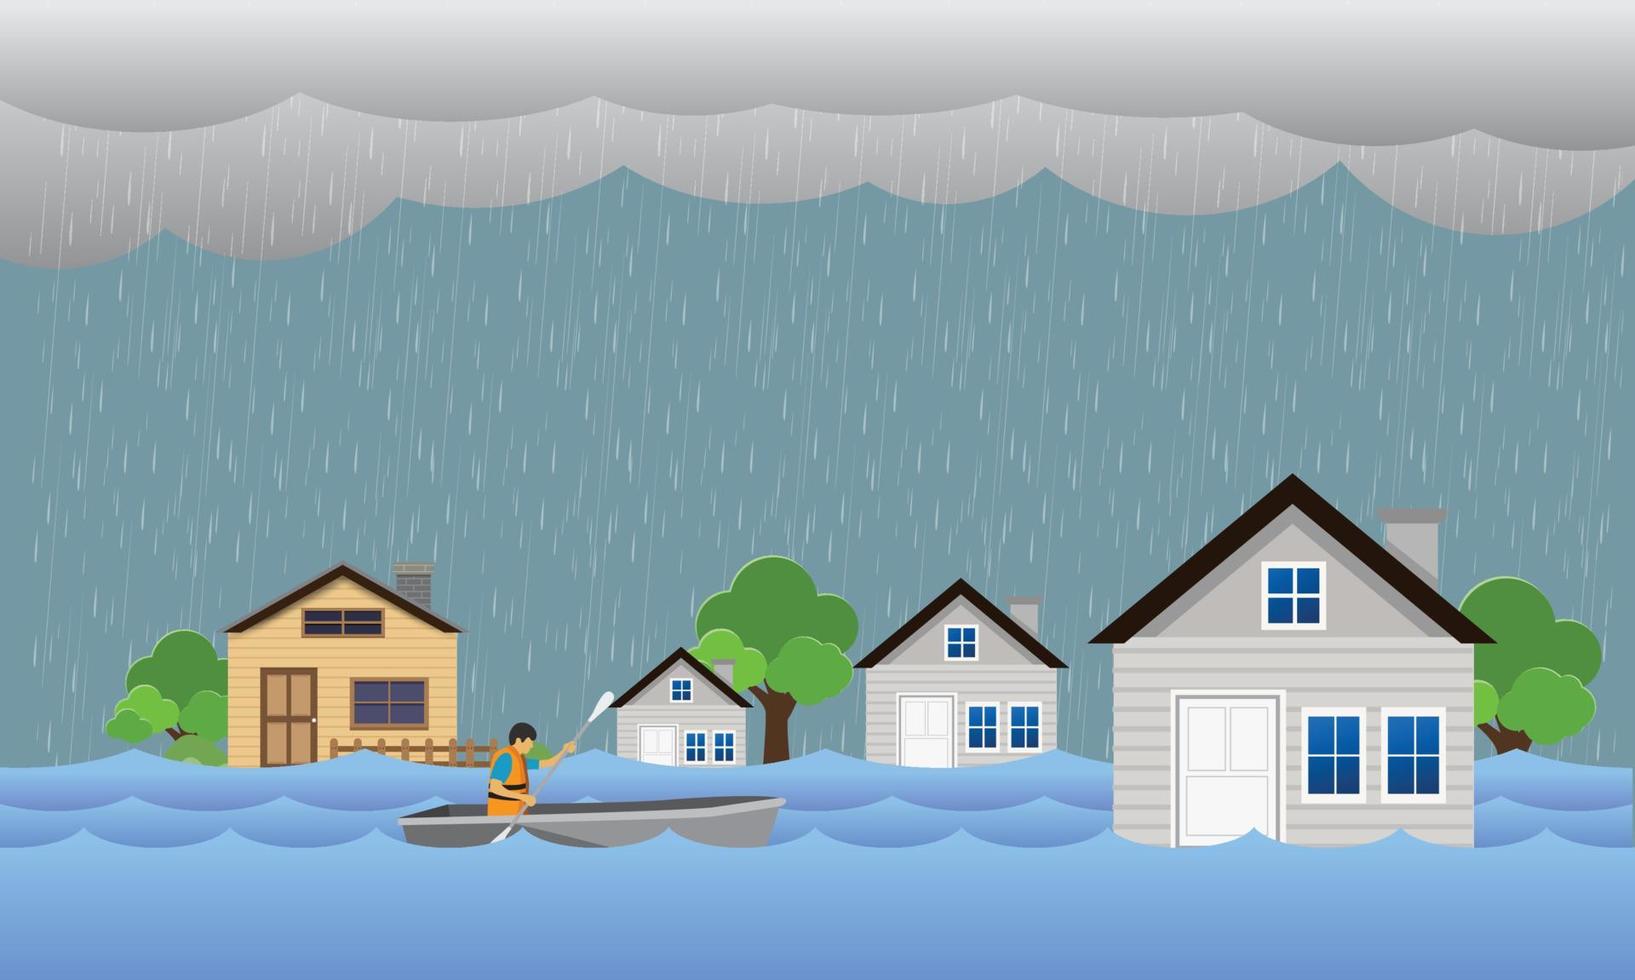 översvämning naturkatastrof med hus, kraftigt regn och storm, skador med hem, översvämmande vatten i staden vektor